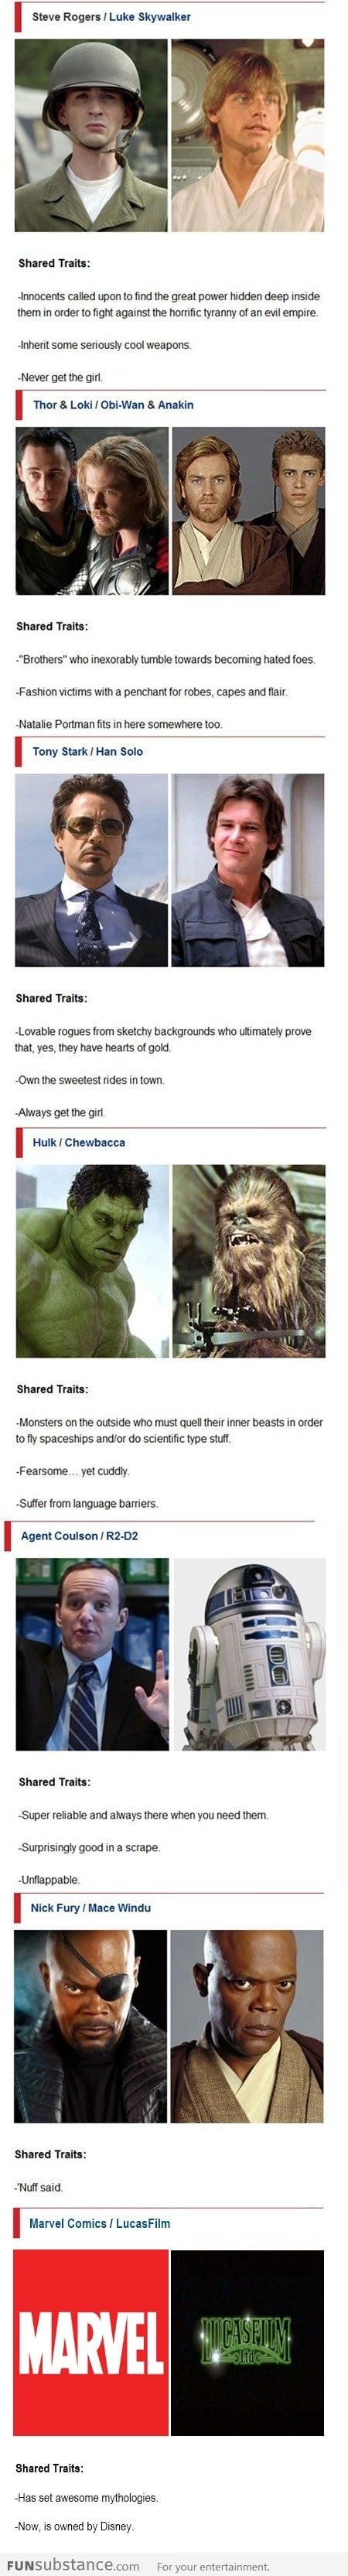 Star Wars vs The Avengers